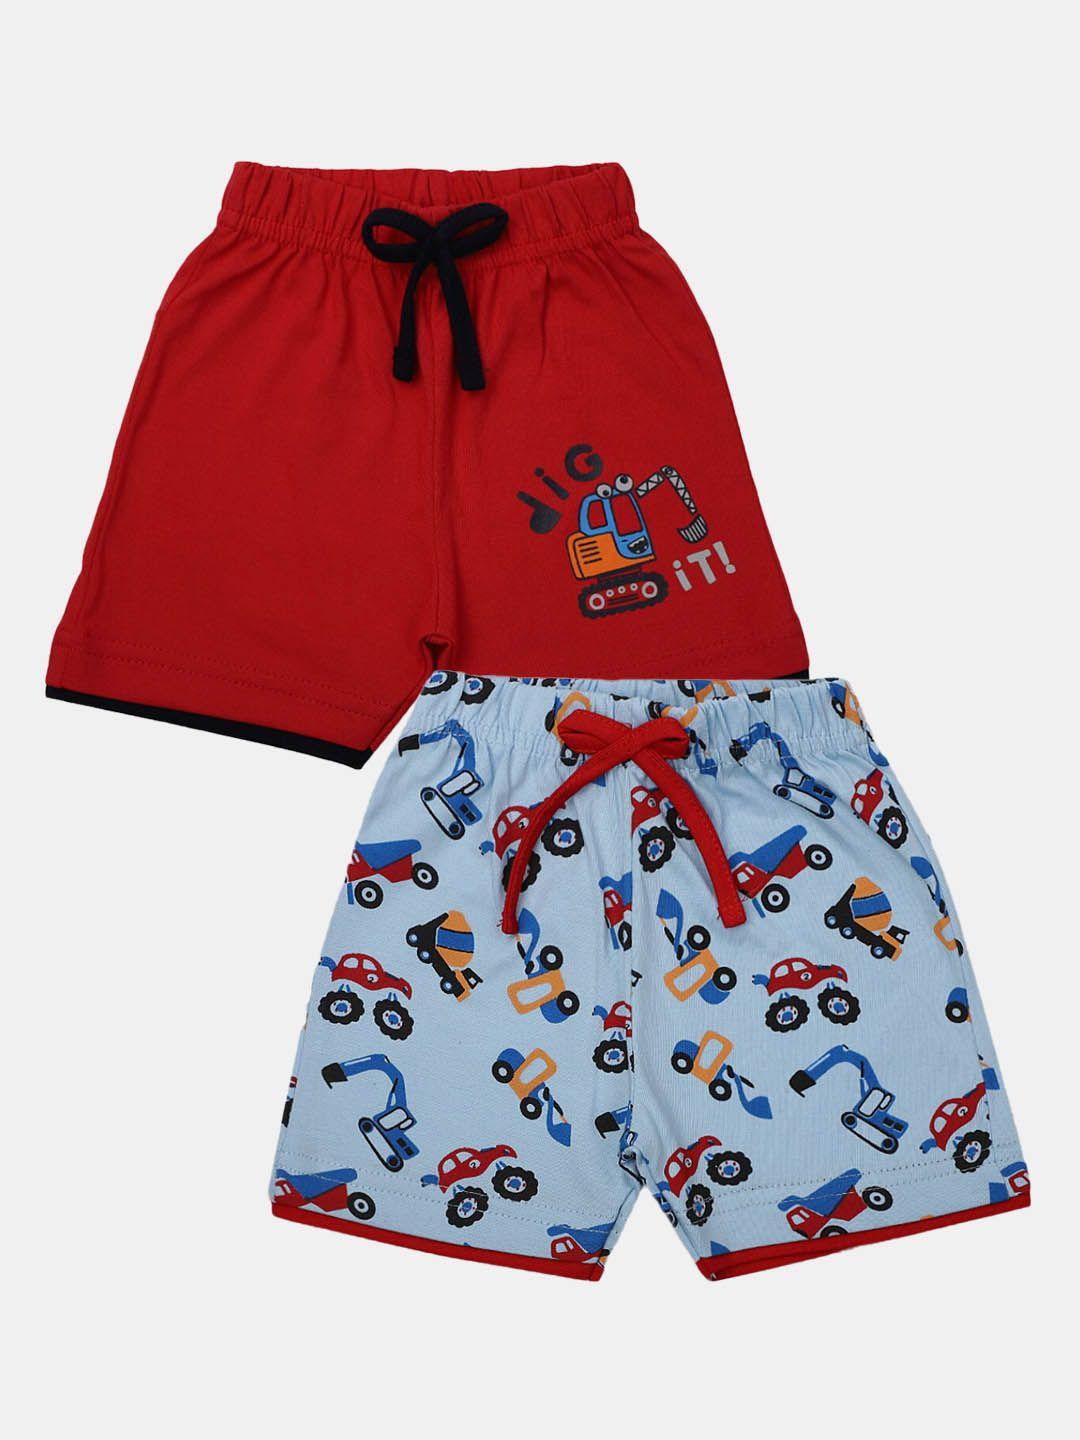 v-mart infants pack of 2 printed cotton shorts